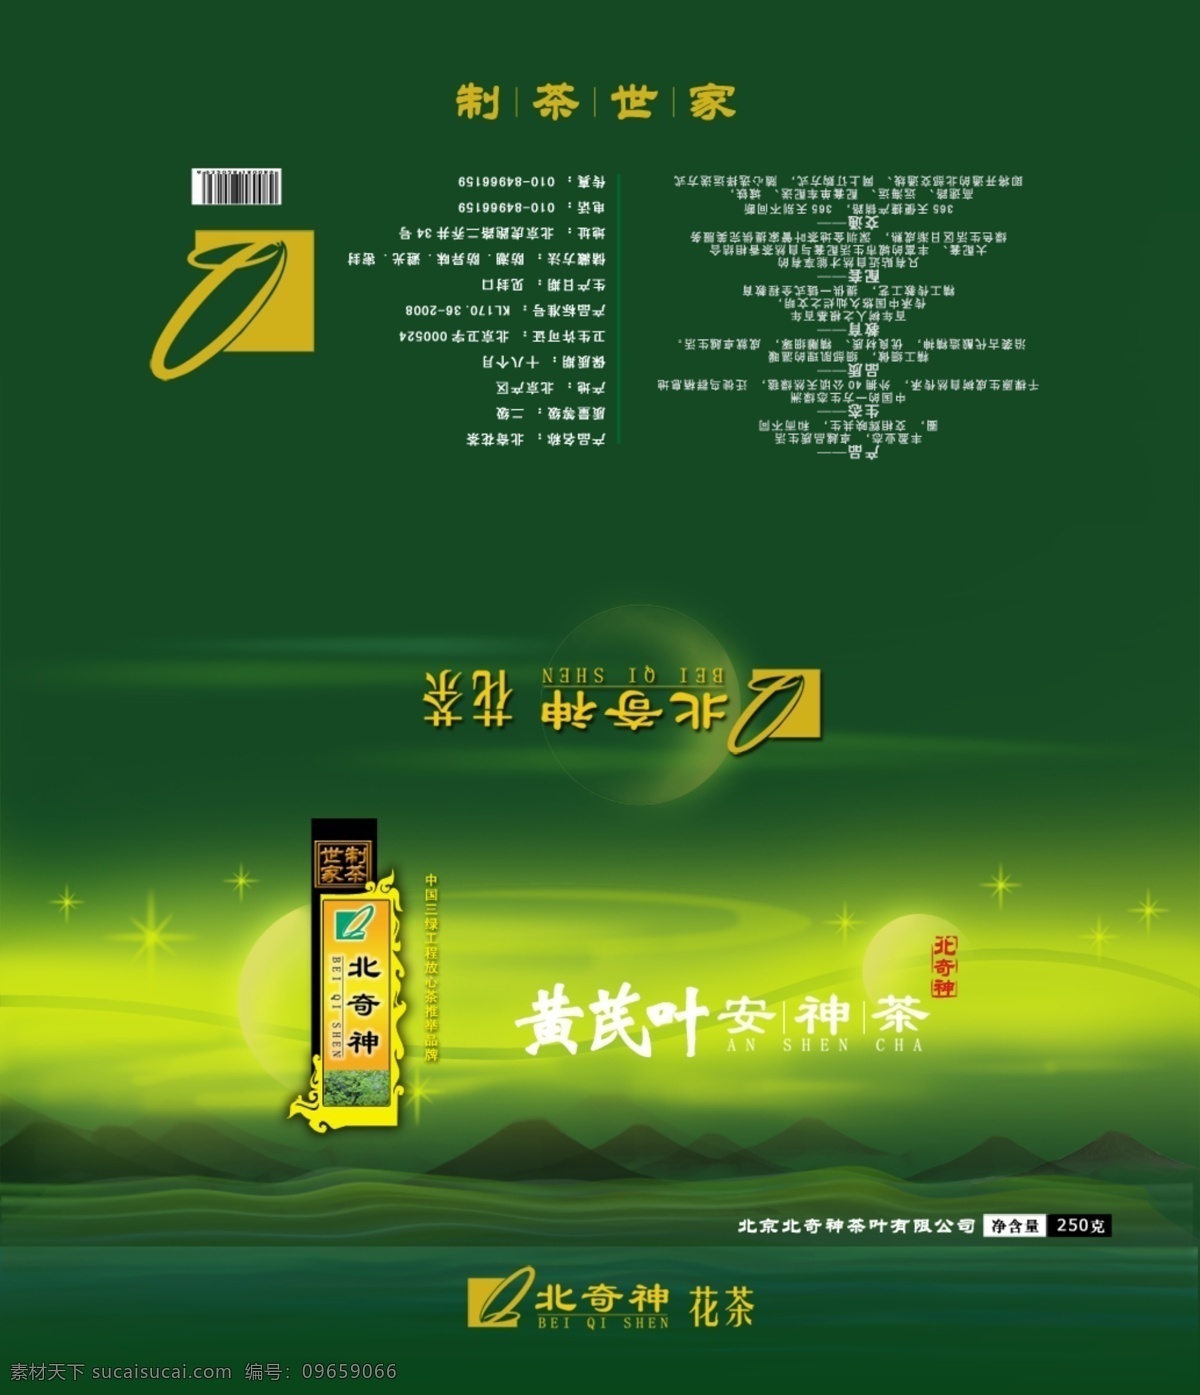 杨城 酒 立体 包装设计 酒盒包装 酒文化 绿色背景 品牌 psd源文件